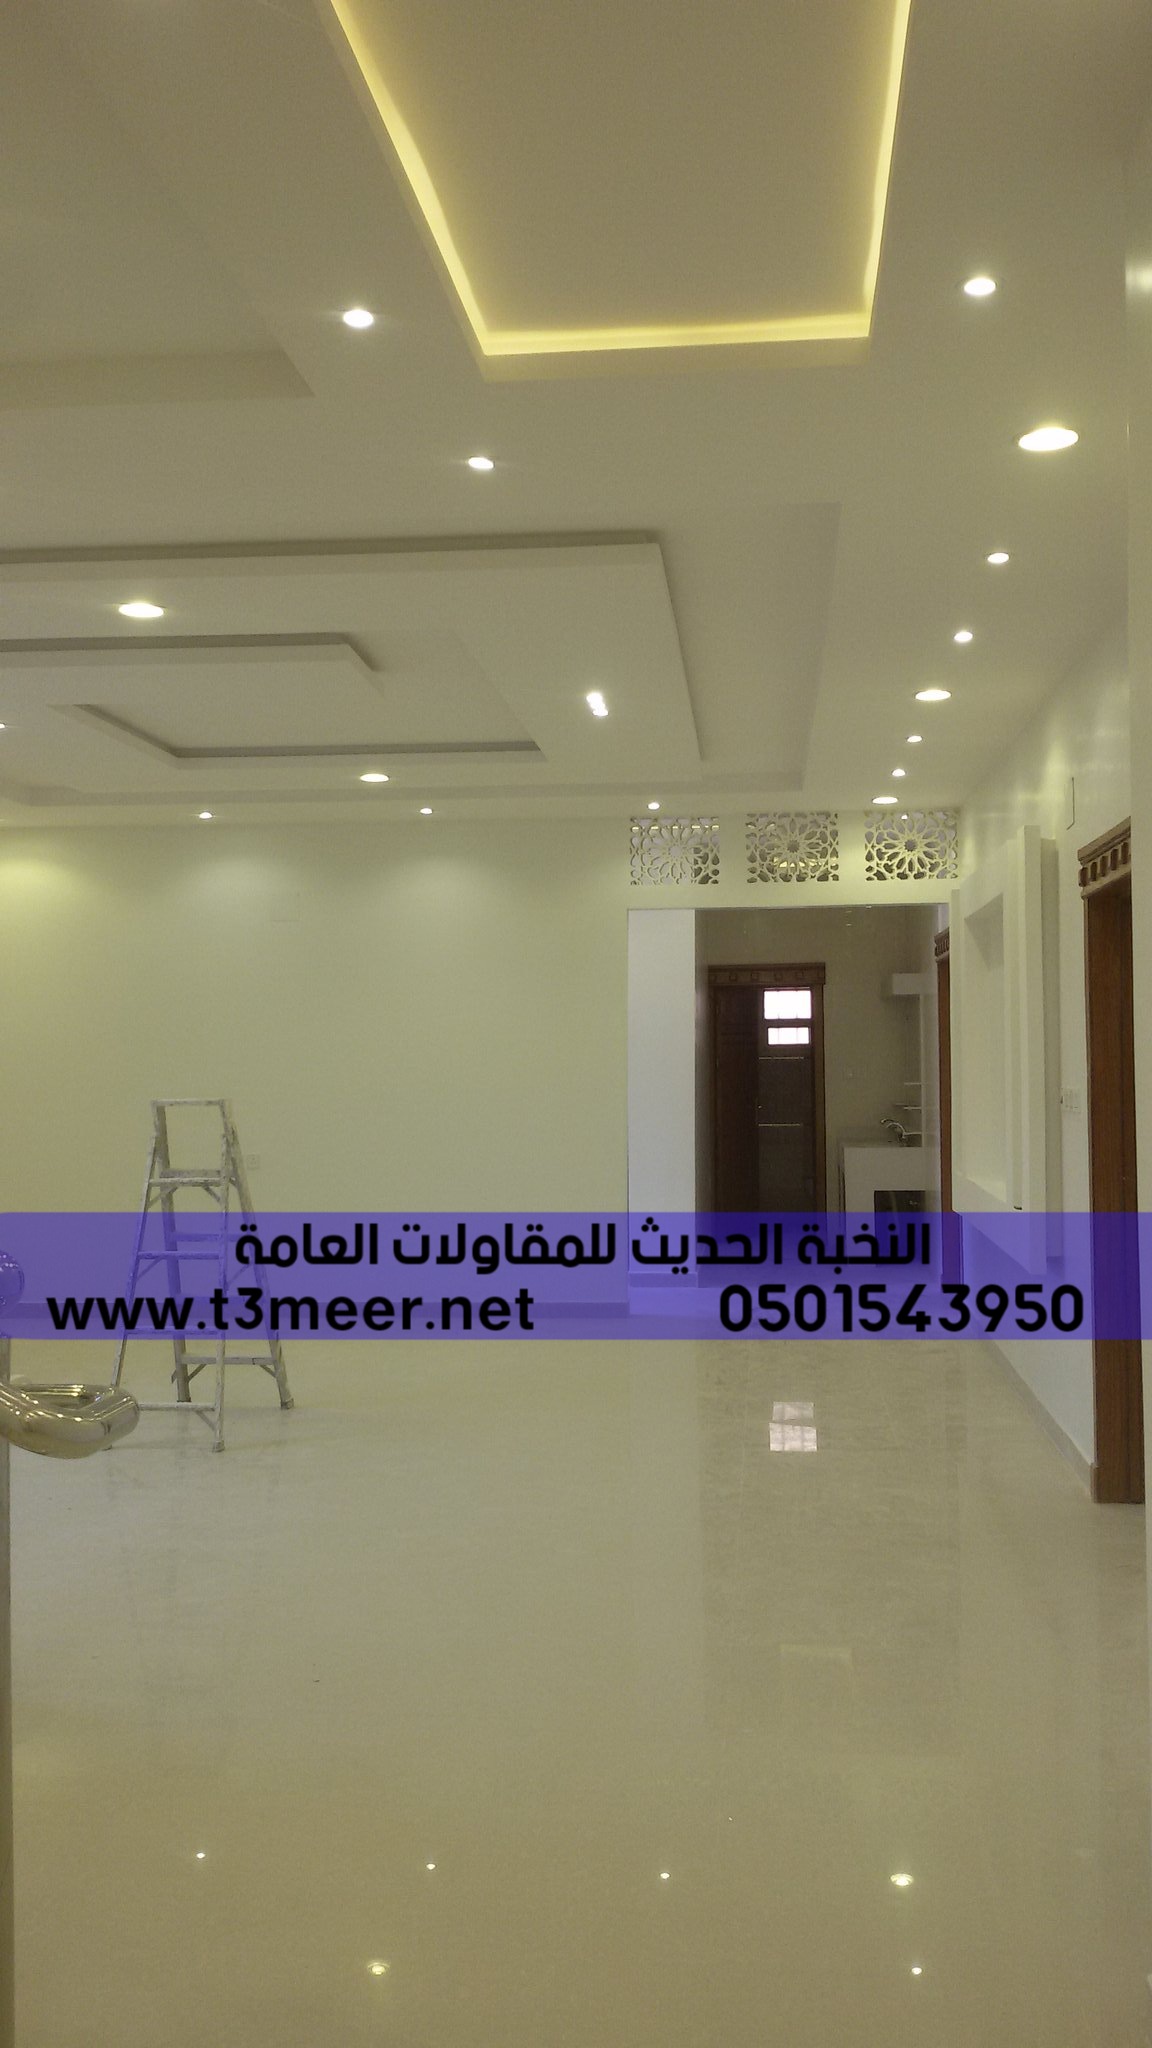 تشطيب منازل و بناء عظم في الرياض , 0501543950 P_2431fz36t6